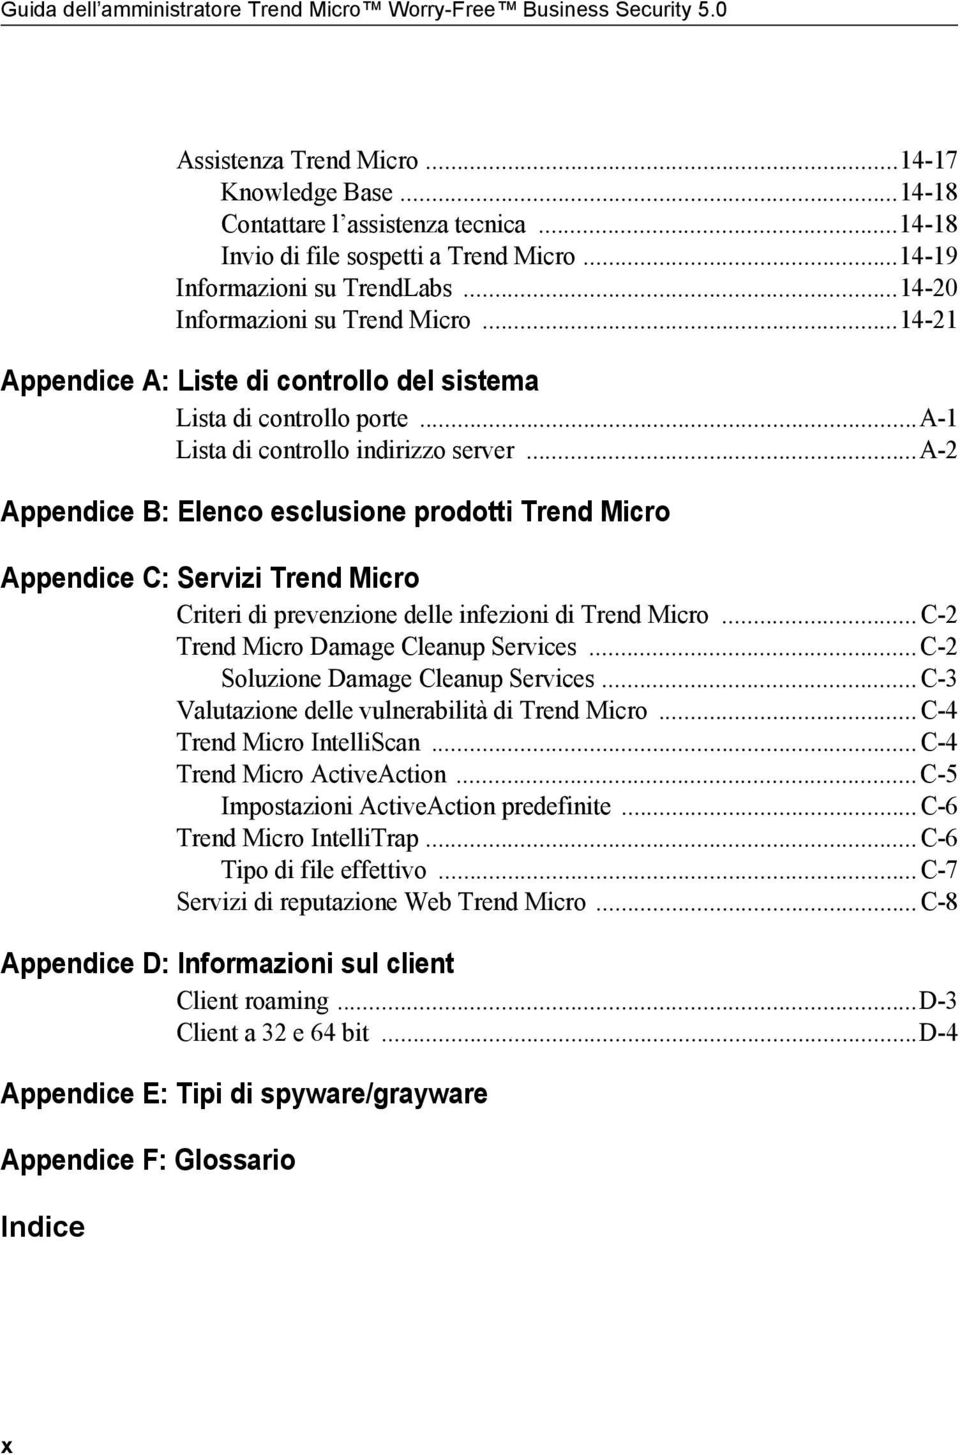 ..a-2 Appendice B: Elenco esclusione prodotti Trend Micro Appendice C: Servizi Trend Micro Criteri di prevenzione delle infezioni di Trend Micro...C-2 Trend Micro Damage Cleanup Services.